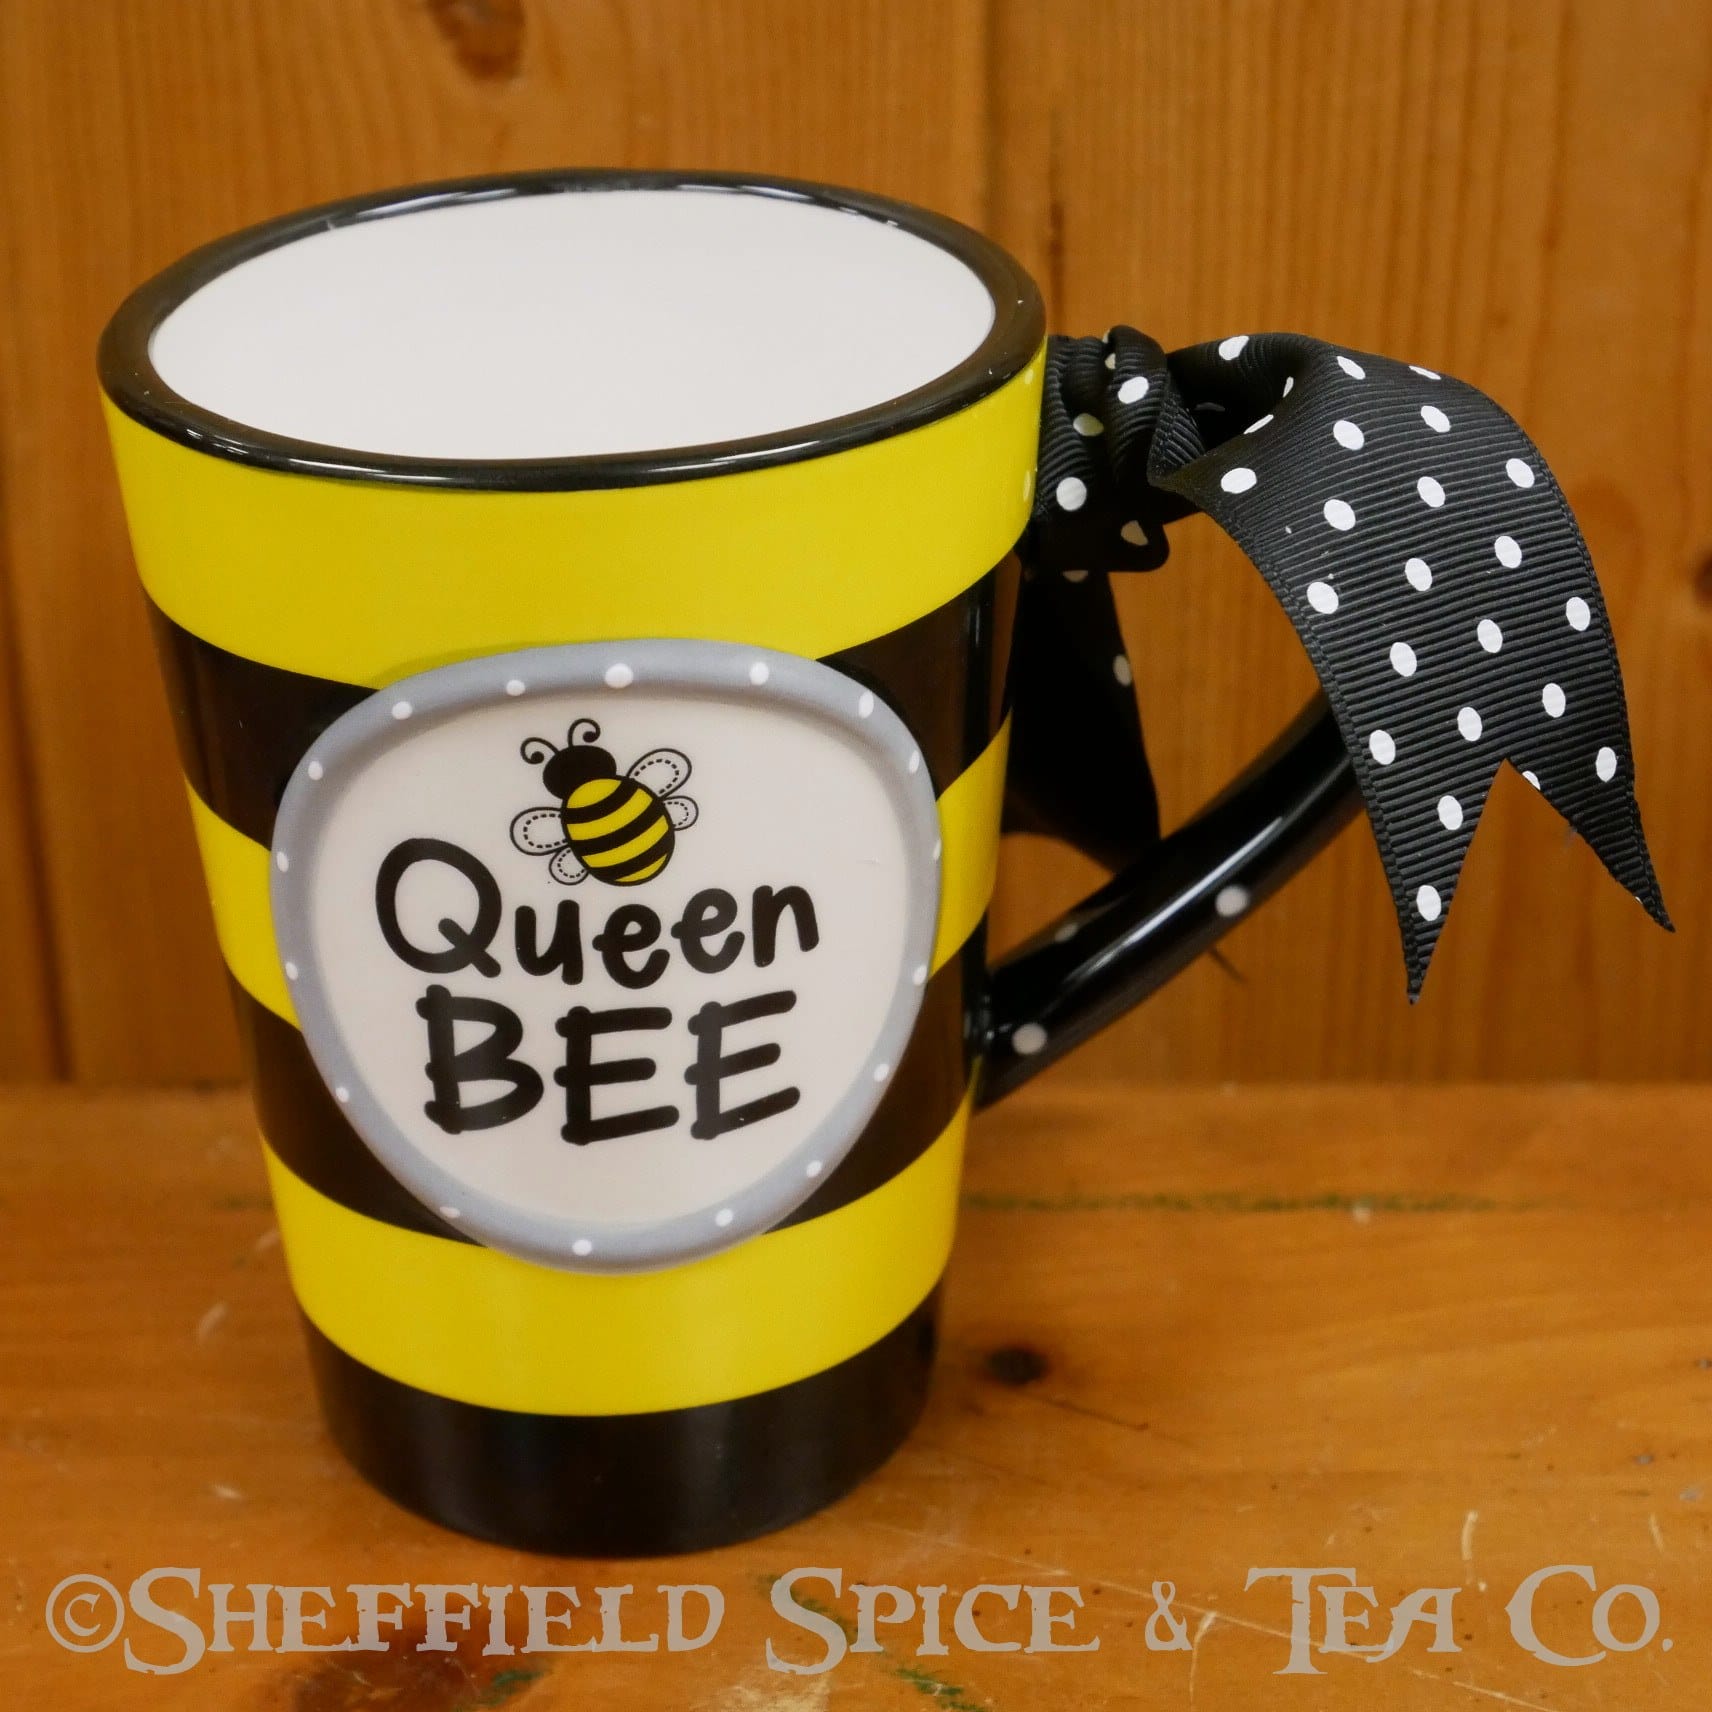 https://epjr3q9r9ms.exactdn.com/wp-content/uploads/2022/03/queen-bee-tea-mug-image.jpg